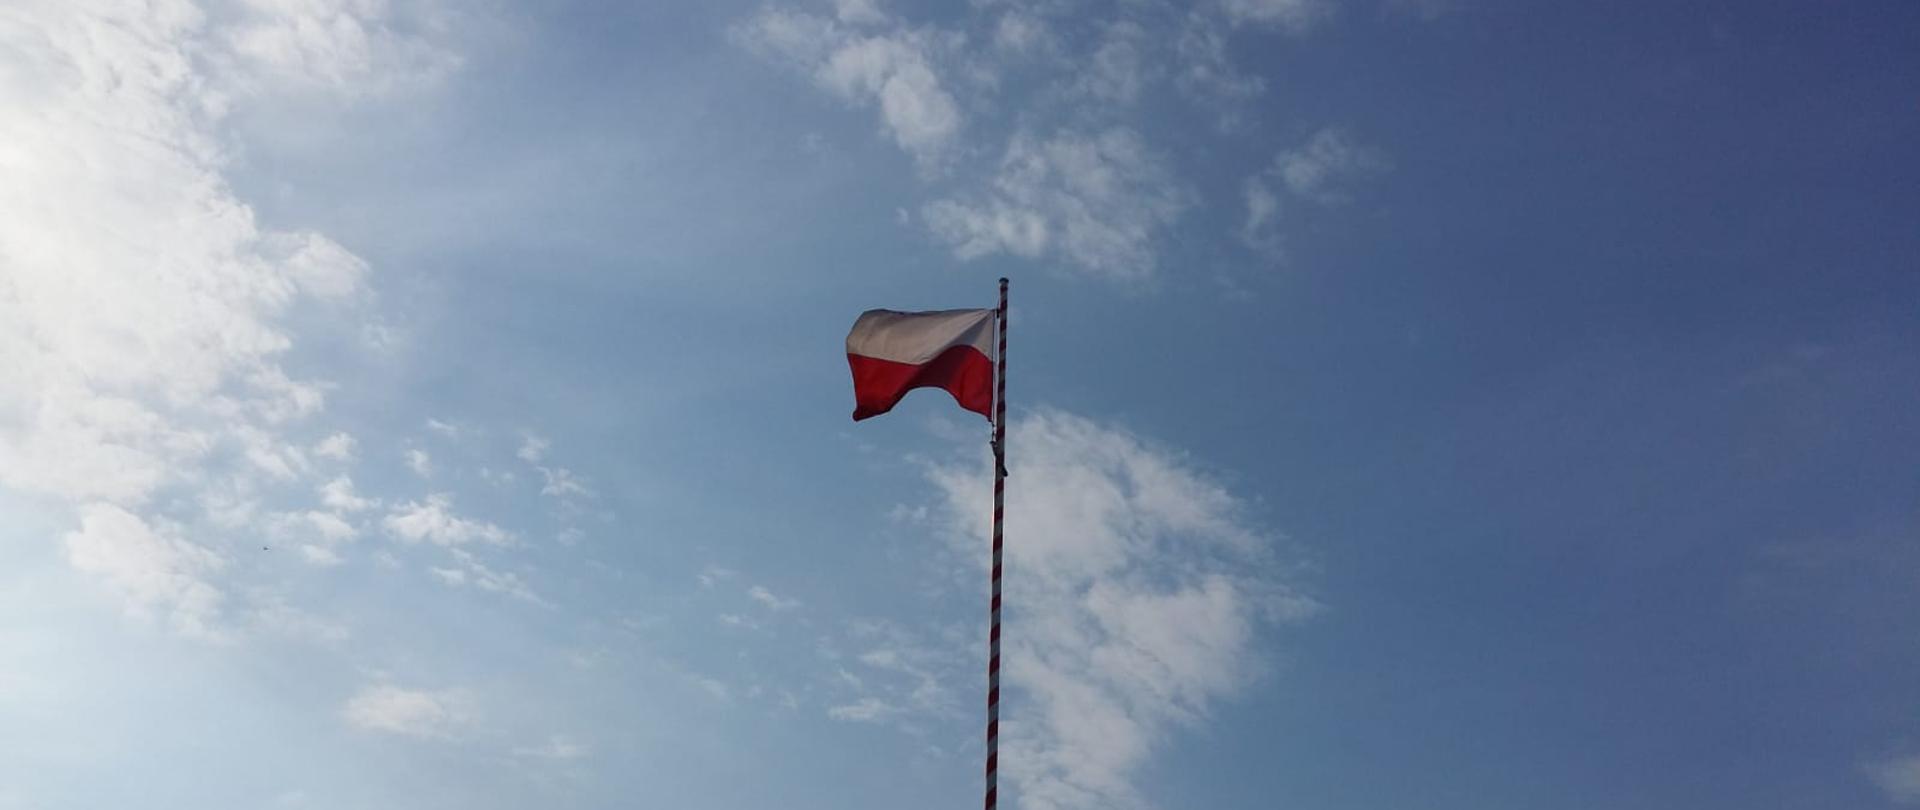 W centralnej części zdjęcia maszt z podniesioną flaga państwową, w tle błękitne niebo z niewielkimi chmurami.